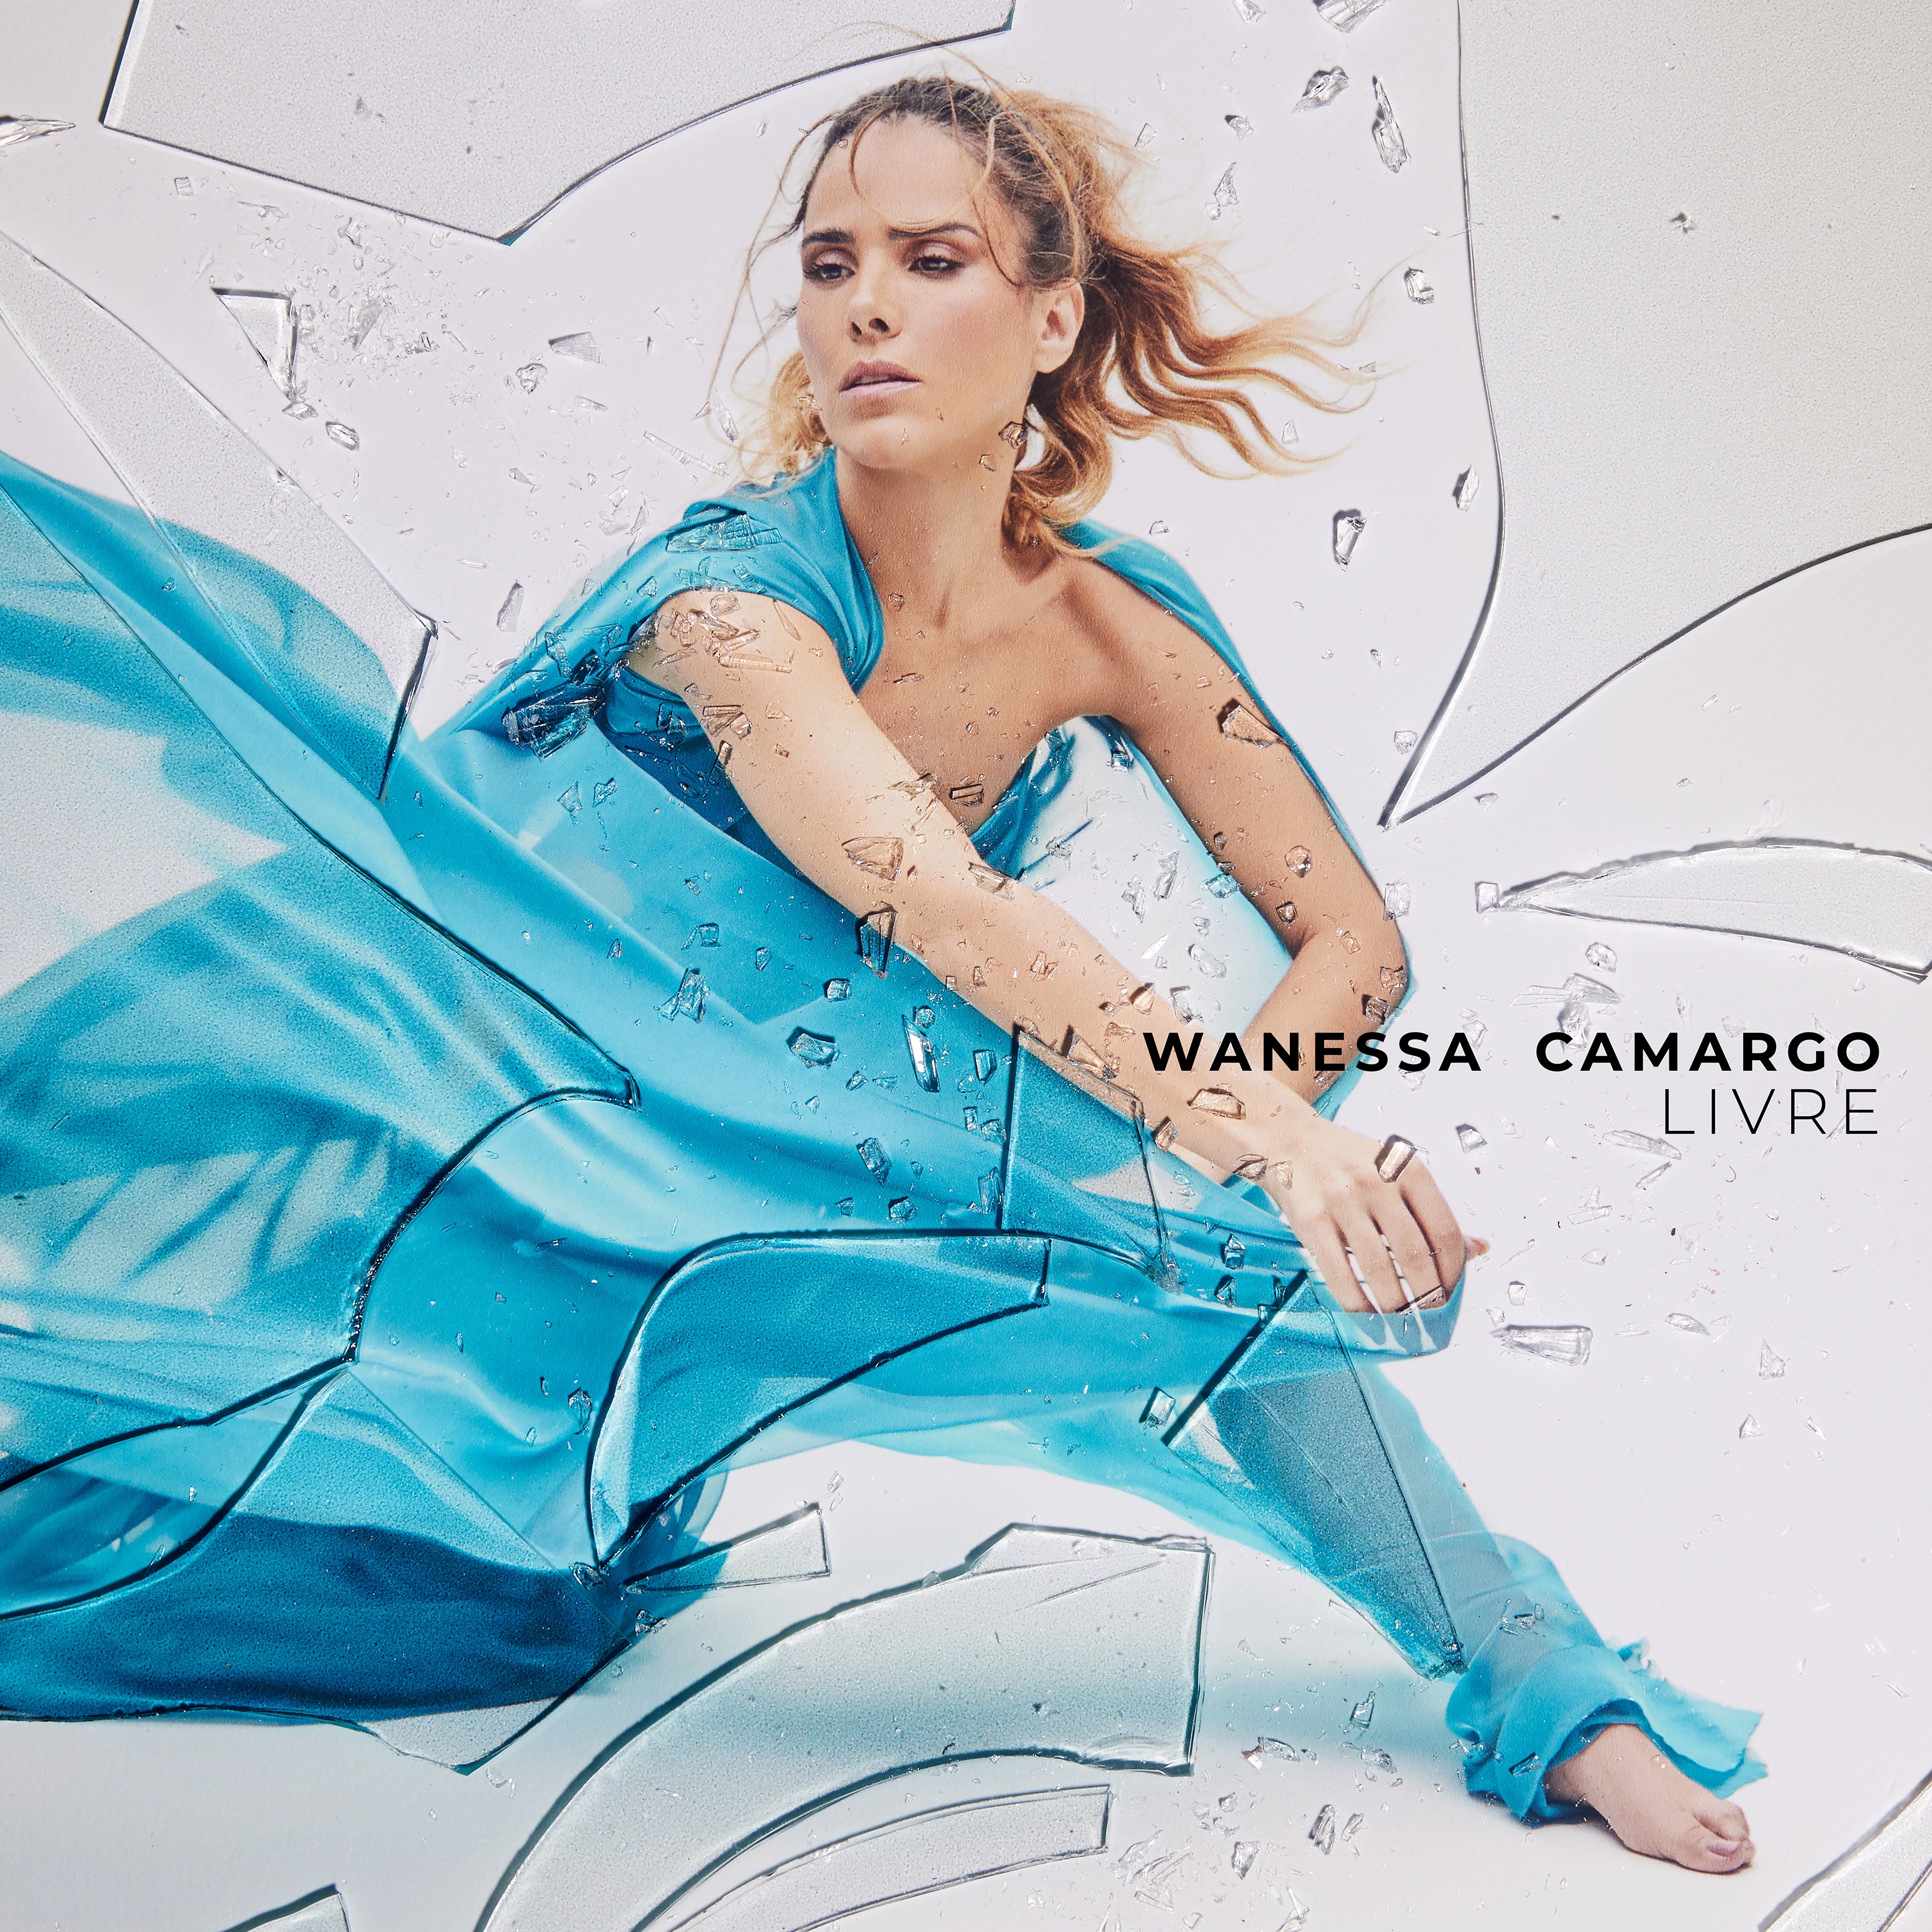 Wanessa Camargo Livre cover artwork